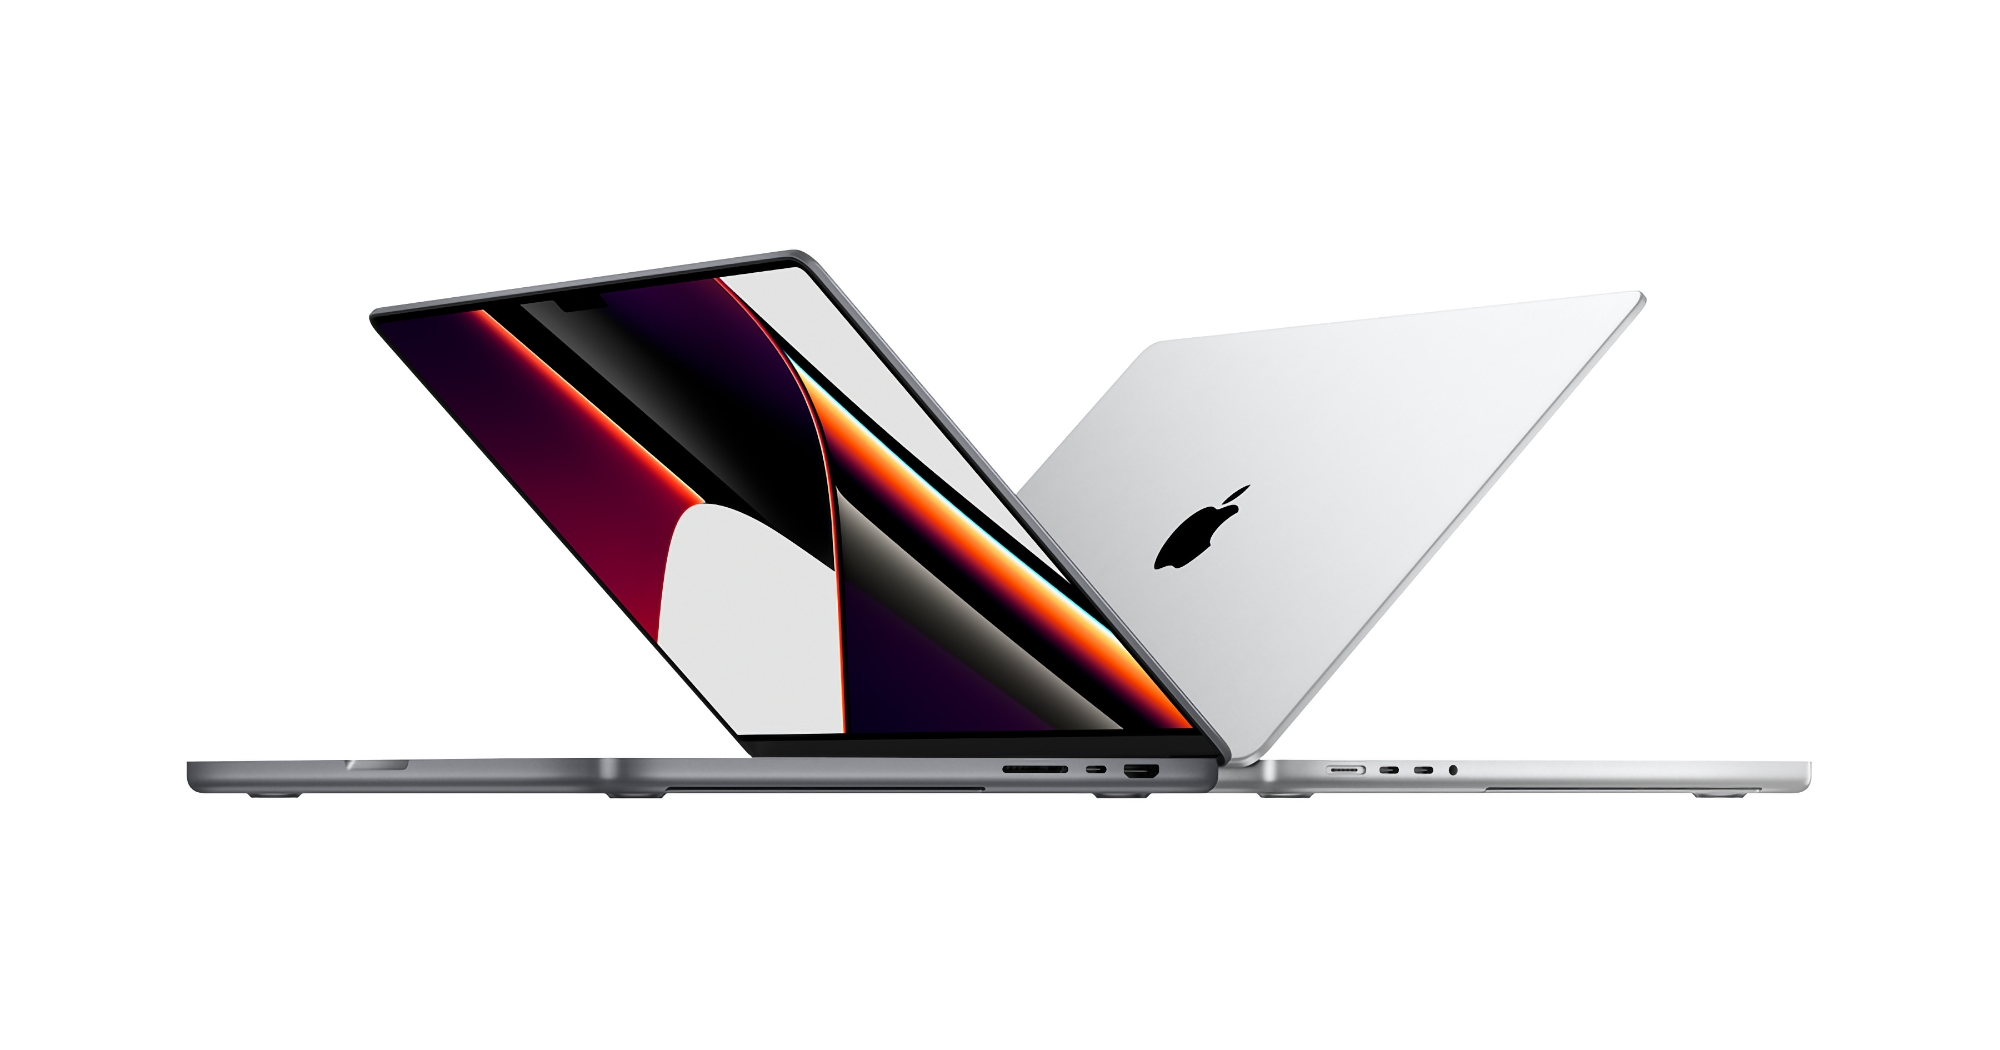 Apple ha abbassato i prezzi dei MacBook Pro ricondizionati con chip M1 Pro e M1 Max: ora costano il 15% in meno rispetto ai nuovi modelli